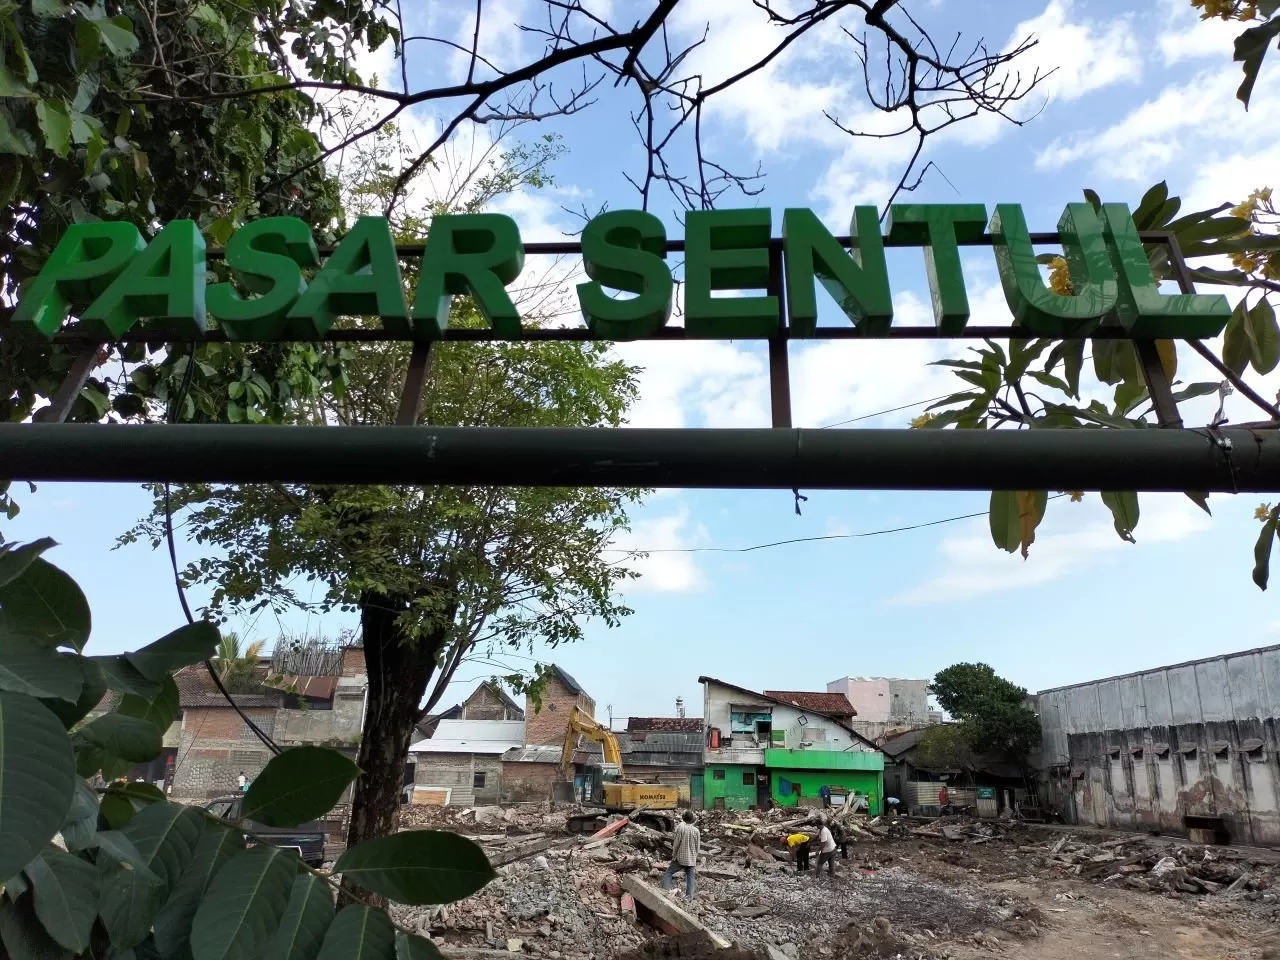  Pembongkaran aset bangunan menggunakan alat berat mengawali Revitalisasi Pasar Sentul Yogyakarta (Fira Nurfiani)